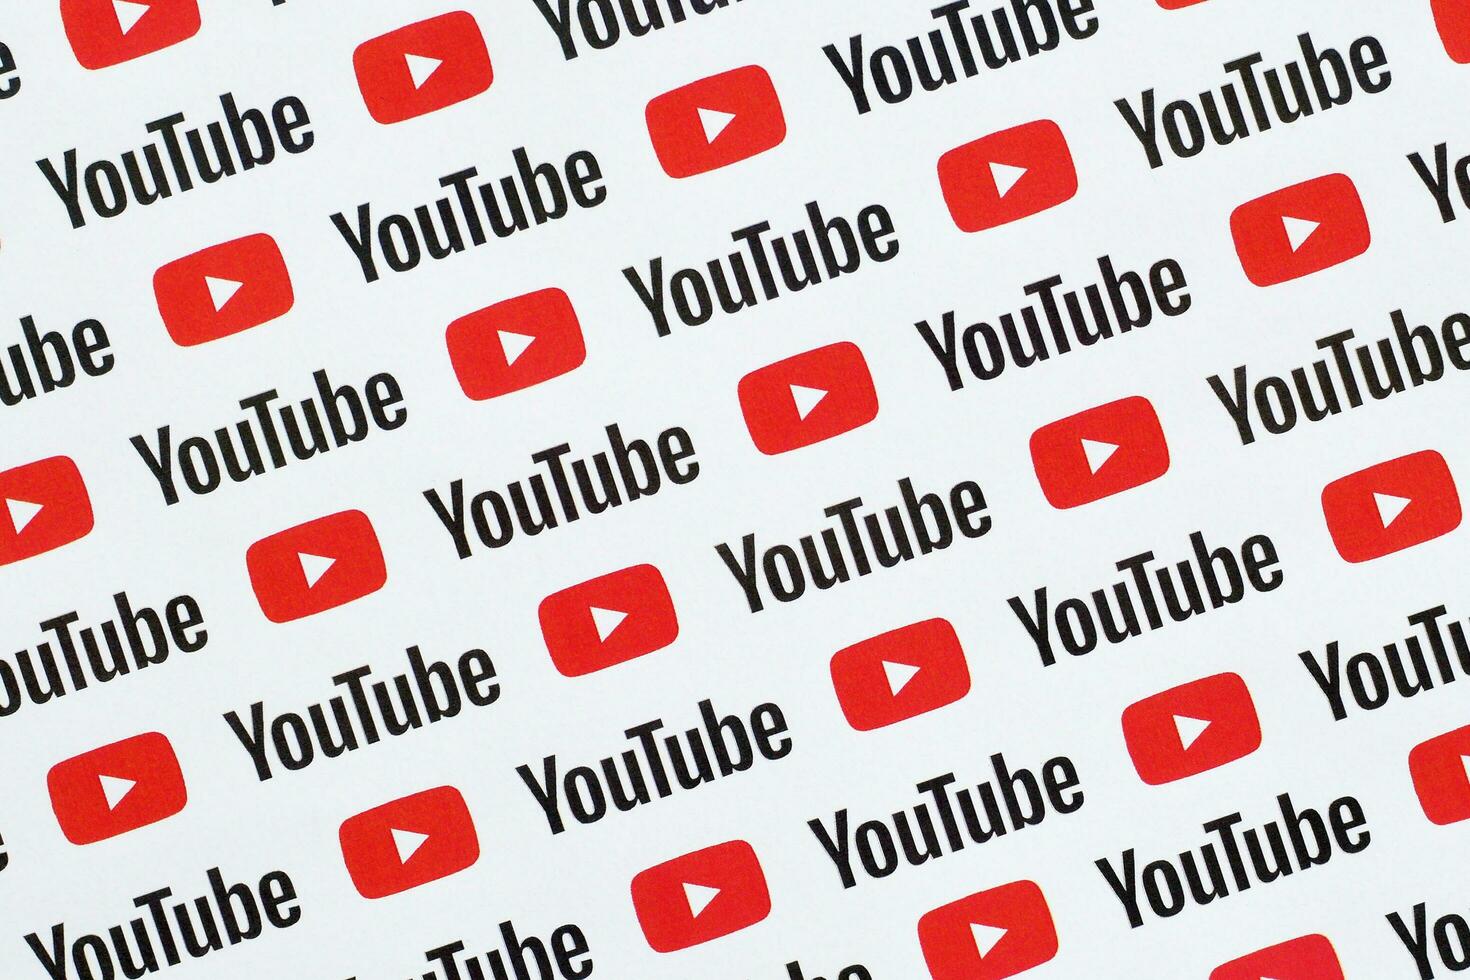 Youtube modello stampato su carta con piccolo Youtube loghi e iscrizioni. Youtube è Google filiale e americano maggior parte popolare condivisione video piattaforma foto